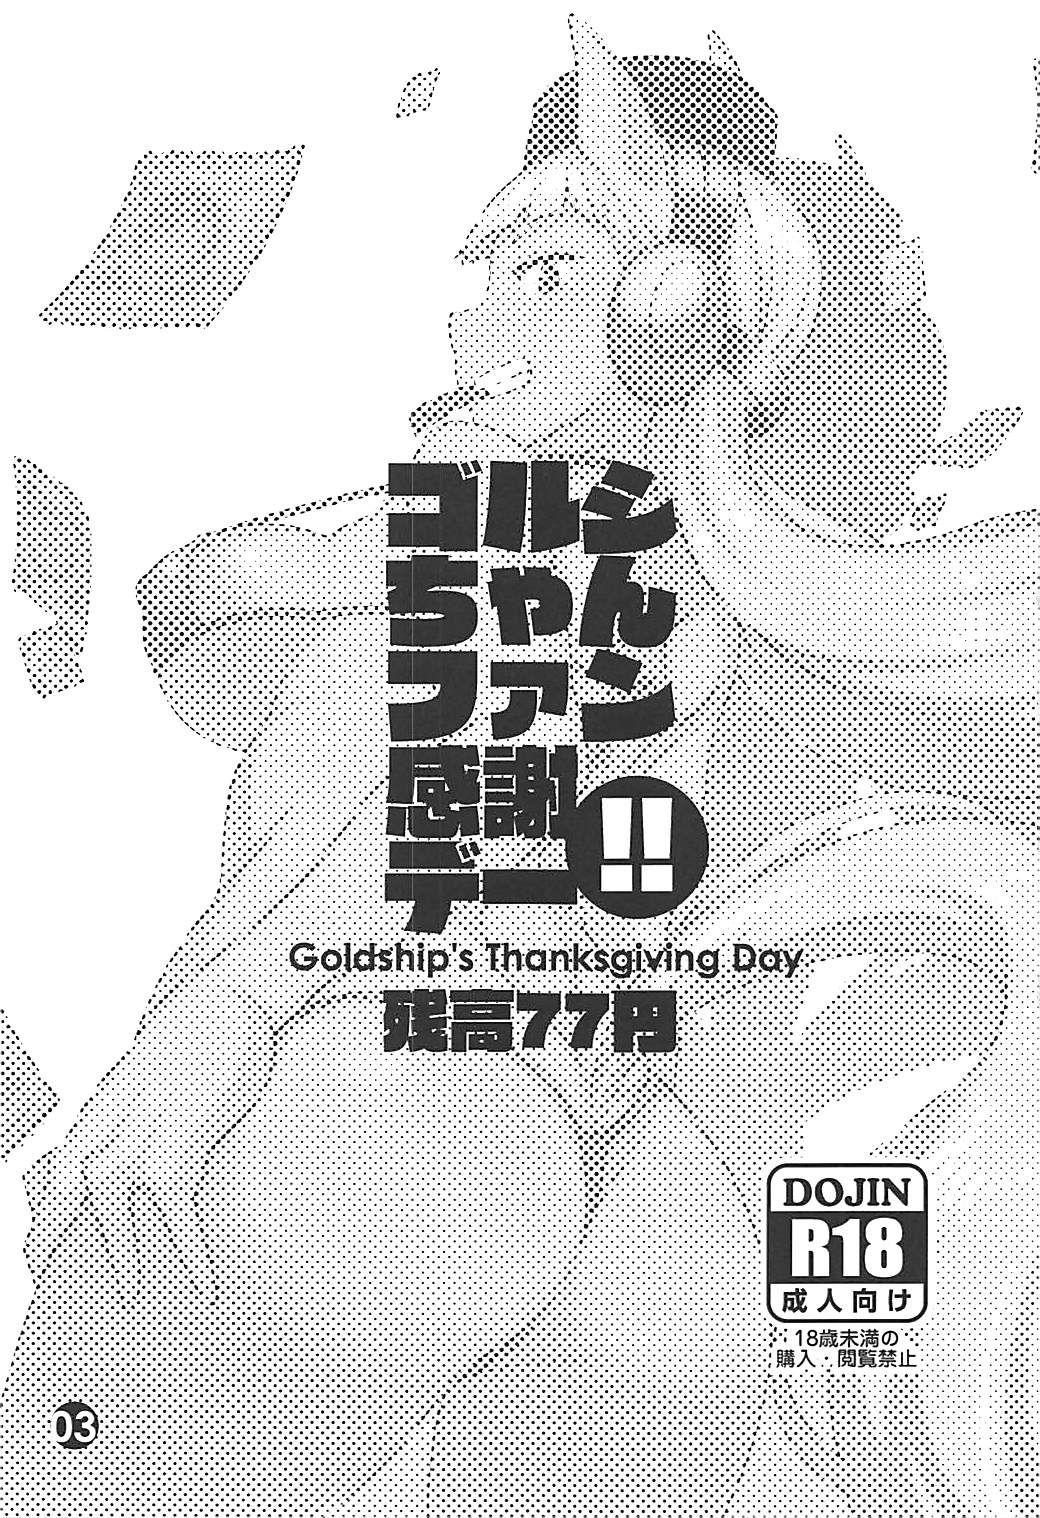 Celeb Gorushi-chan Fan Kansha Day!! - Uma musume pretty derby Str8 - Page 2